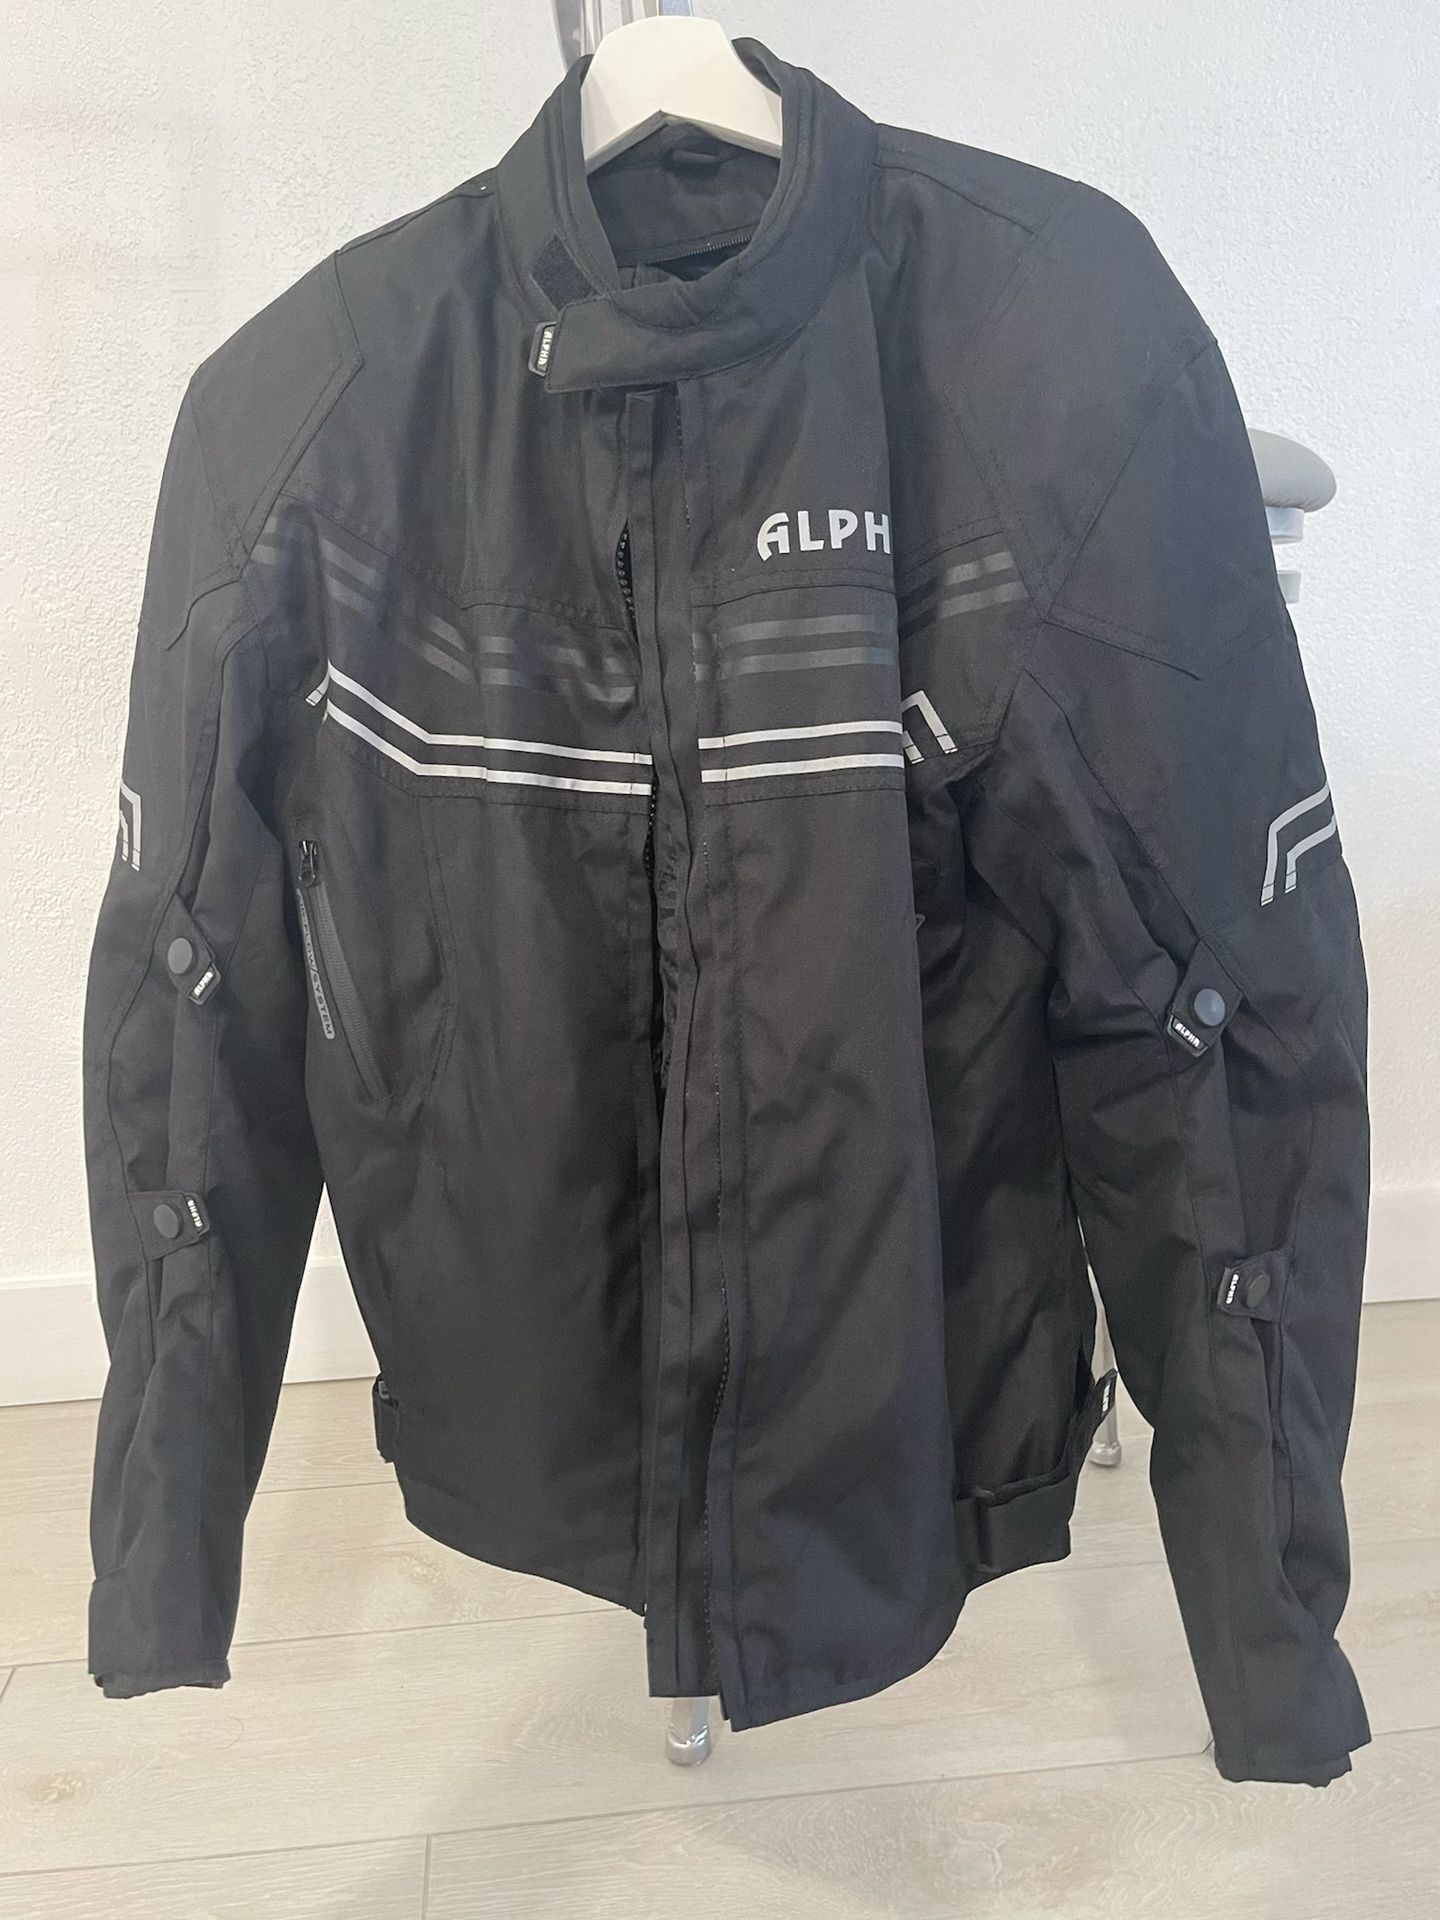 Alpha Motorcycle Jacket 